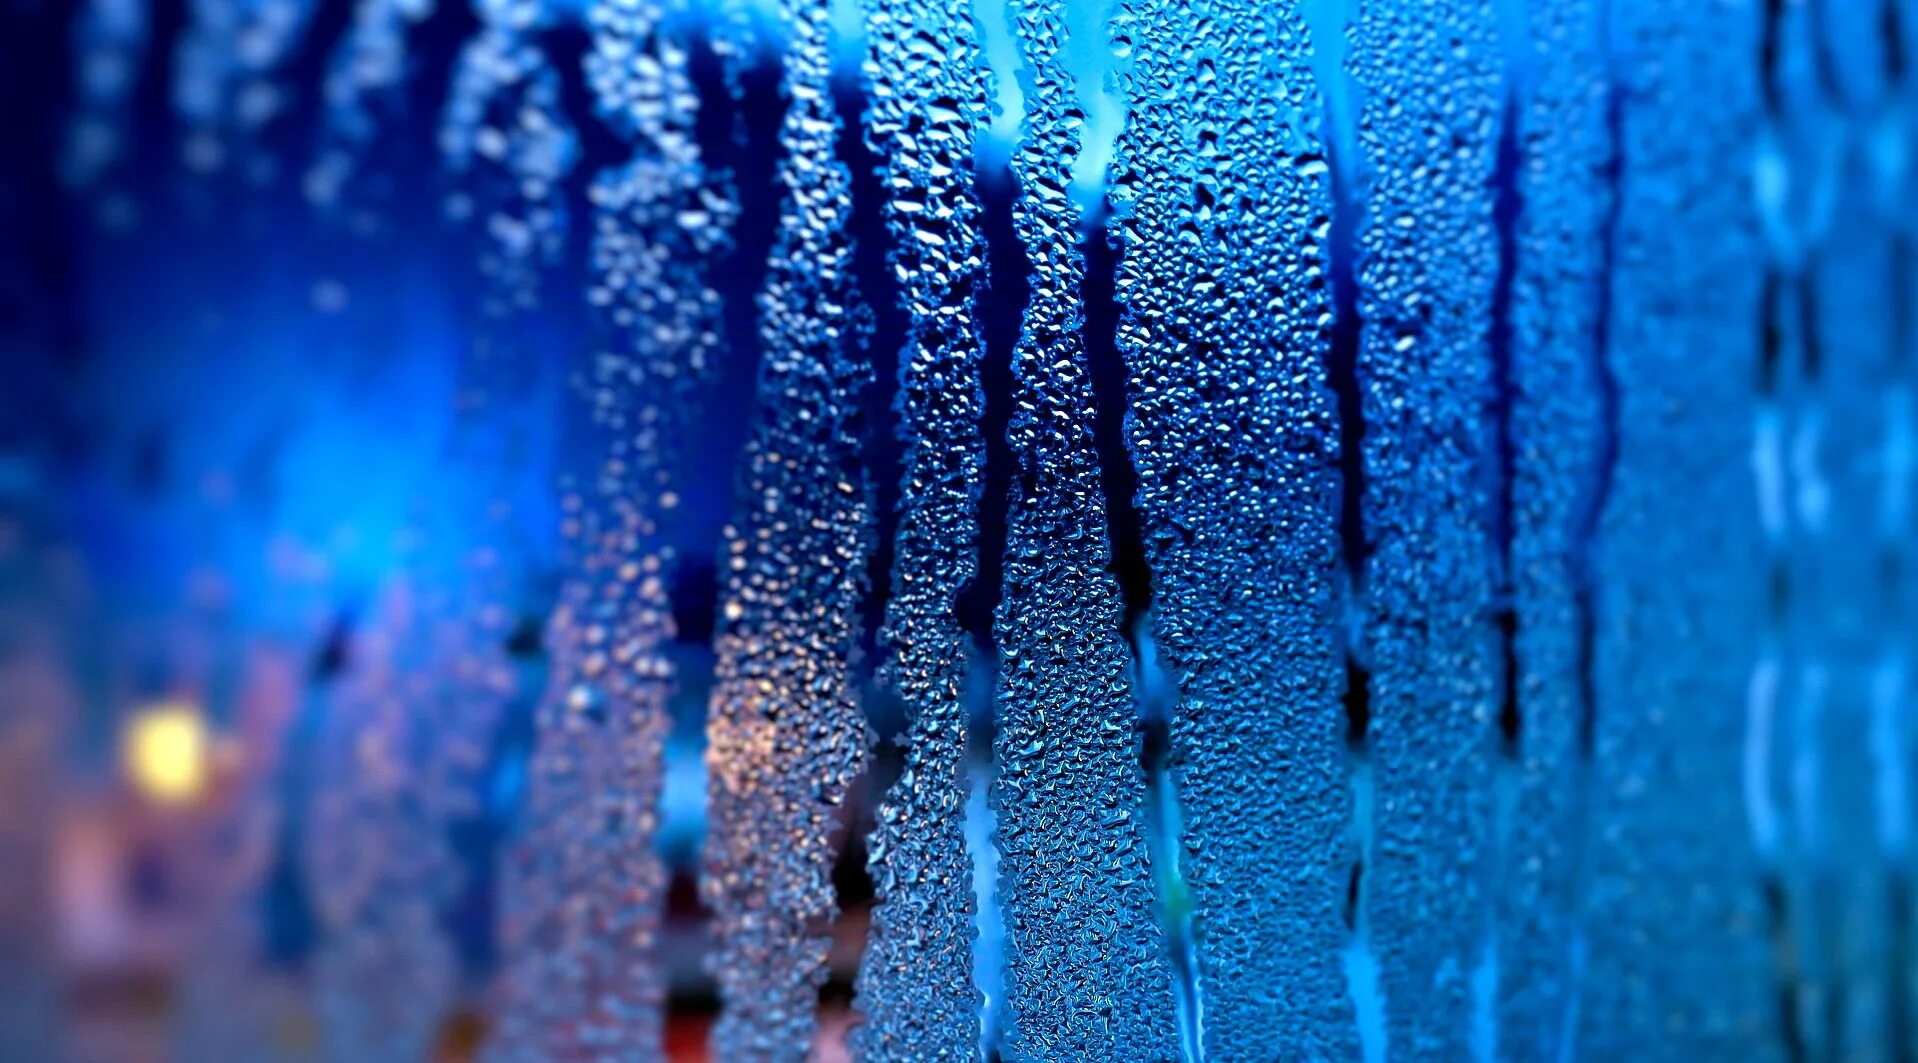 Капли на стекле. Синий дождь. Текстура стекла. Мокрое стекло. Обои на рабочий стол капель